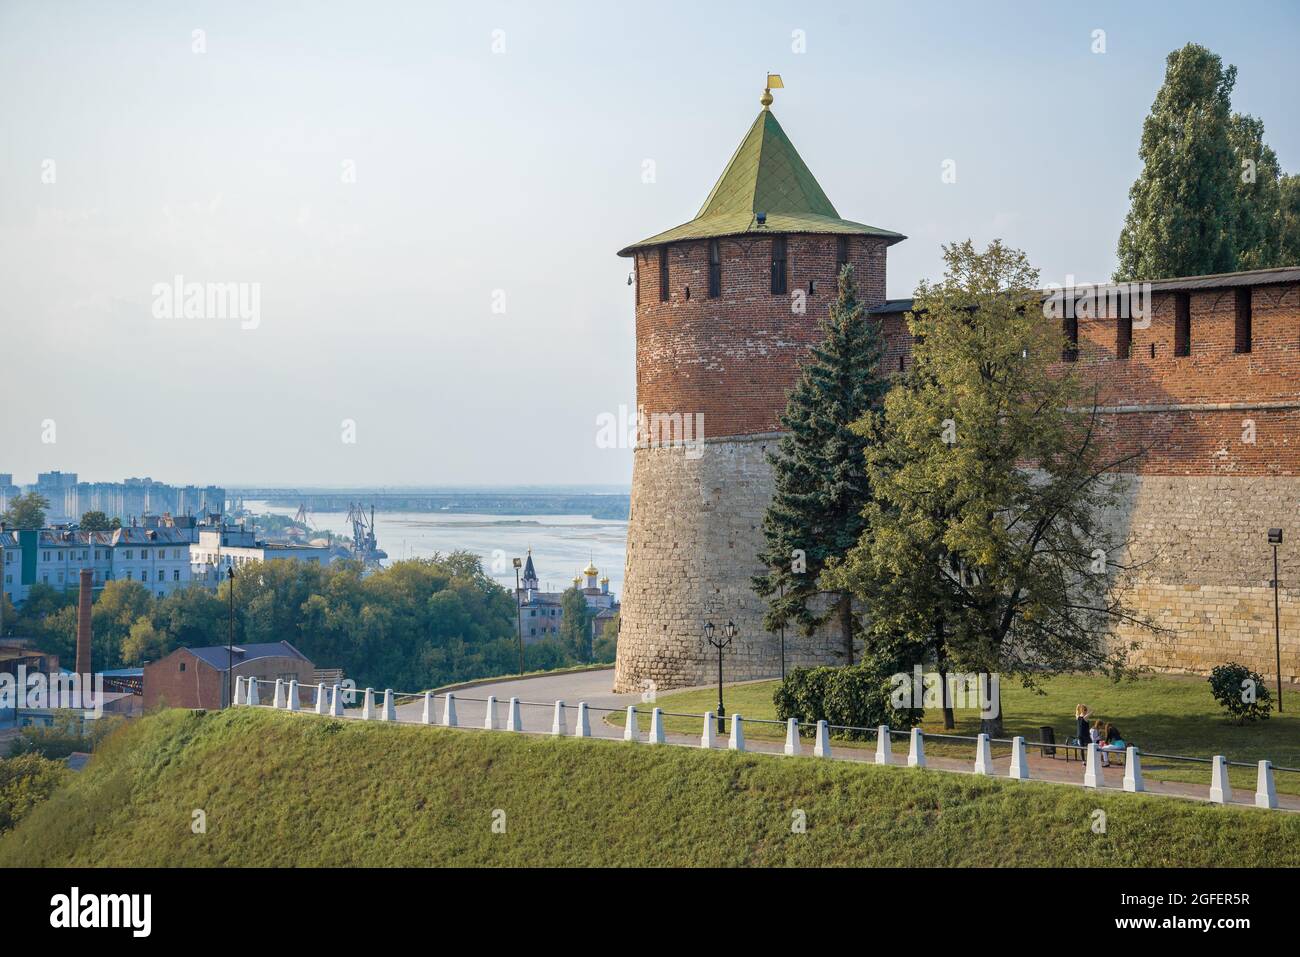 Koromyslova tower of the Nizhny Novgorod Kremlin against the backdrop of the cityscape on a August morning. Nizhny Novgorod, Russia Stock Photo